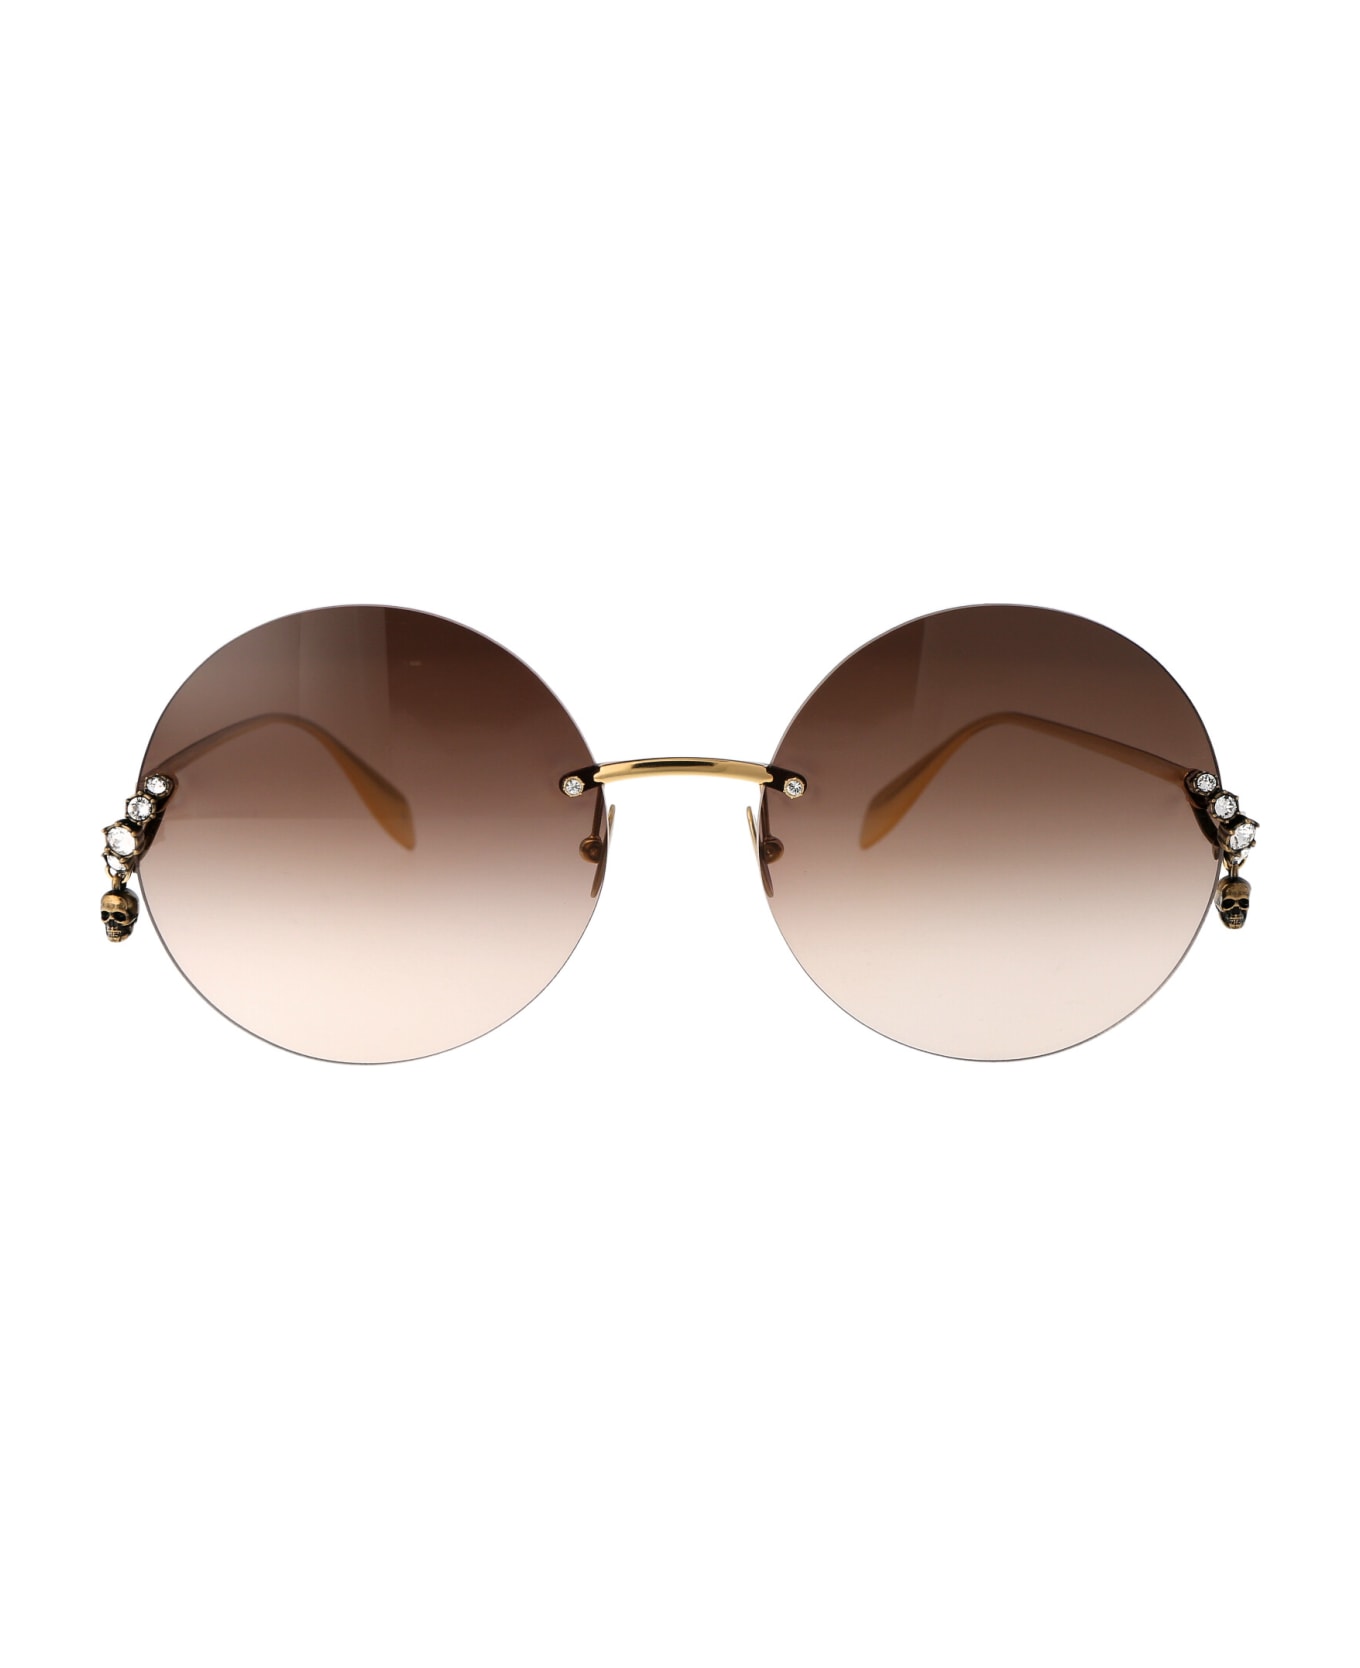 Alexander McQueen Eyewear Am0418s Sunglasses - 002 GOLD GOLD BROWN